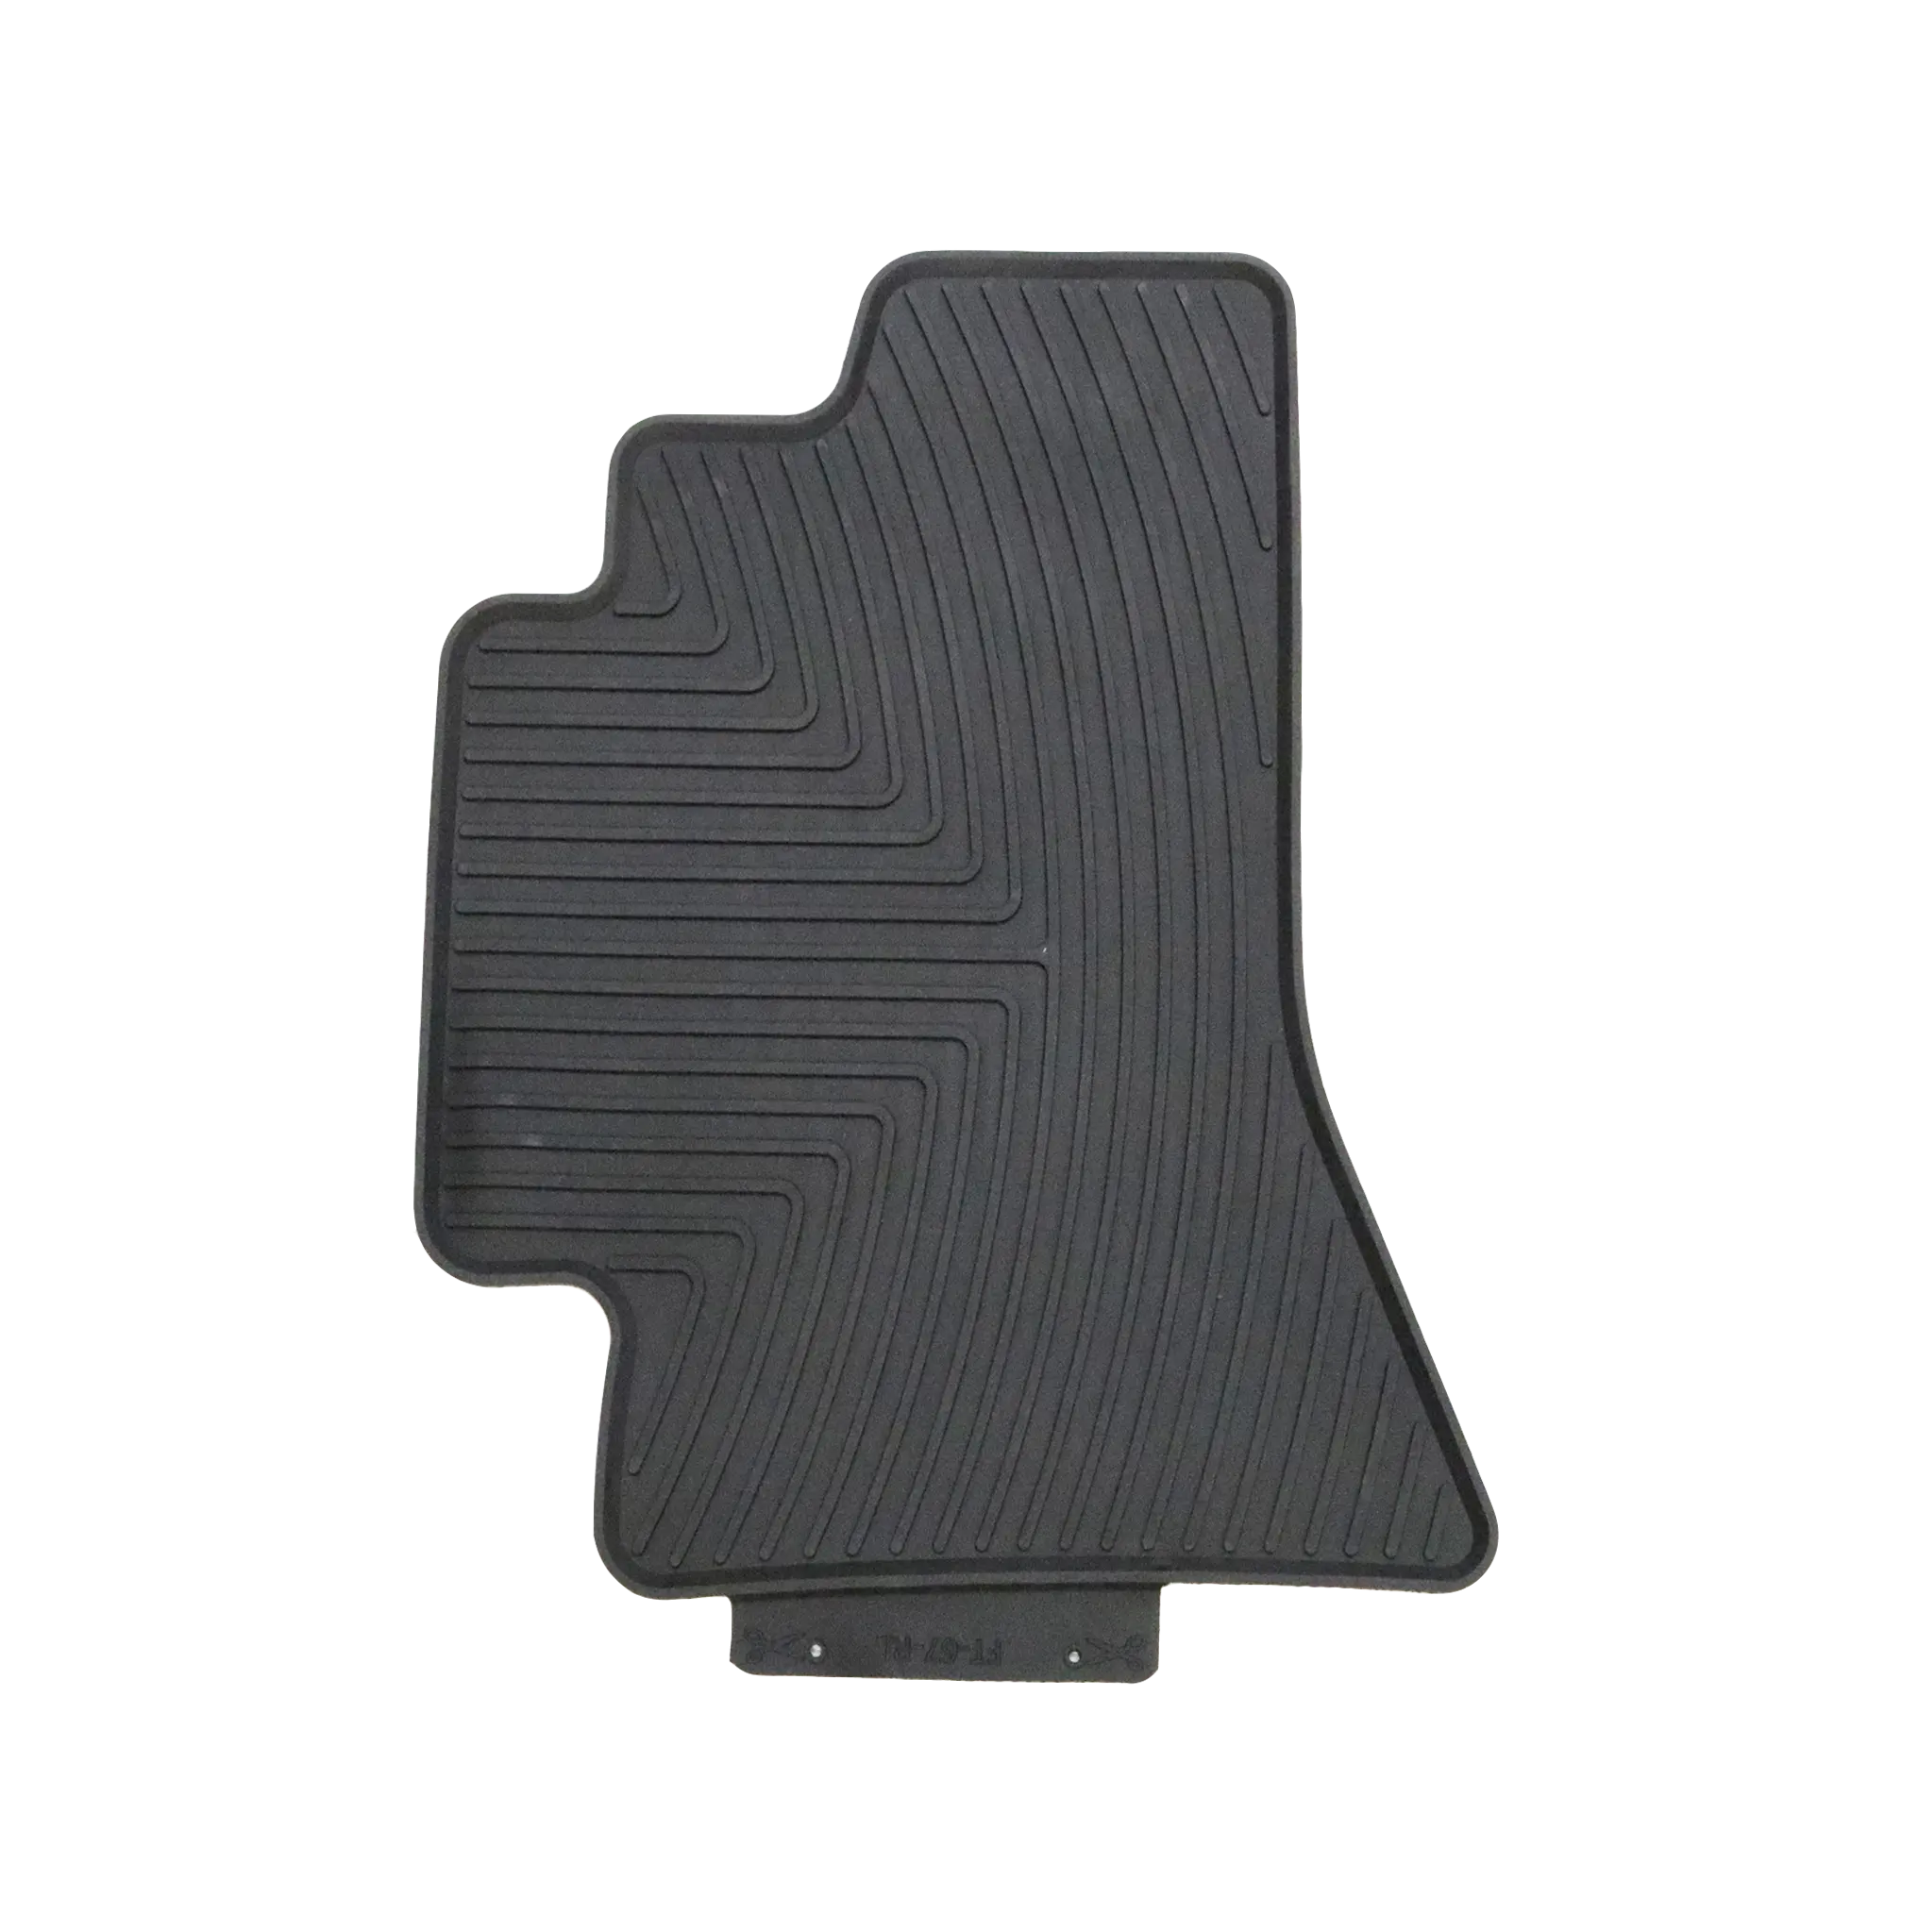 Индивидуальная форма для багажника автомобиля и напольных вкладышей все резиновые компоненты и Резина обработка во Вьетнаме сертифицированный Завод полный комплект ISO9001